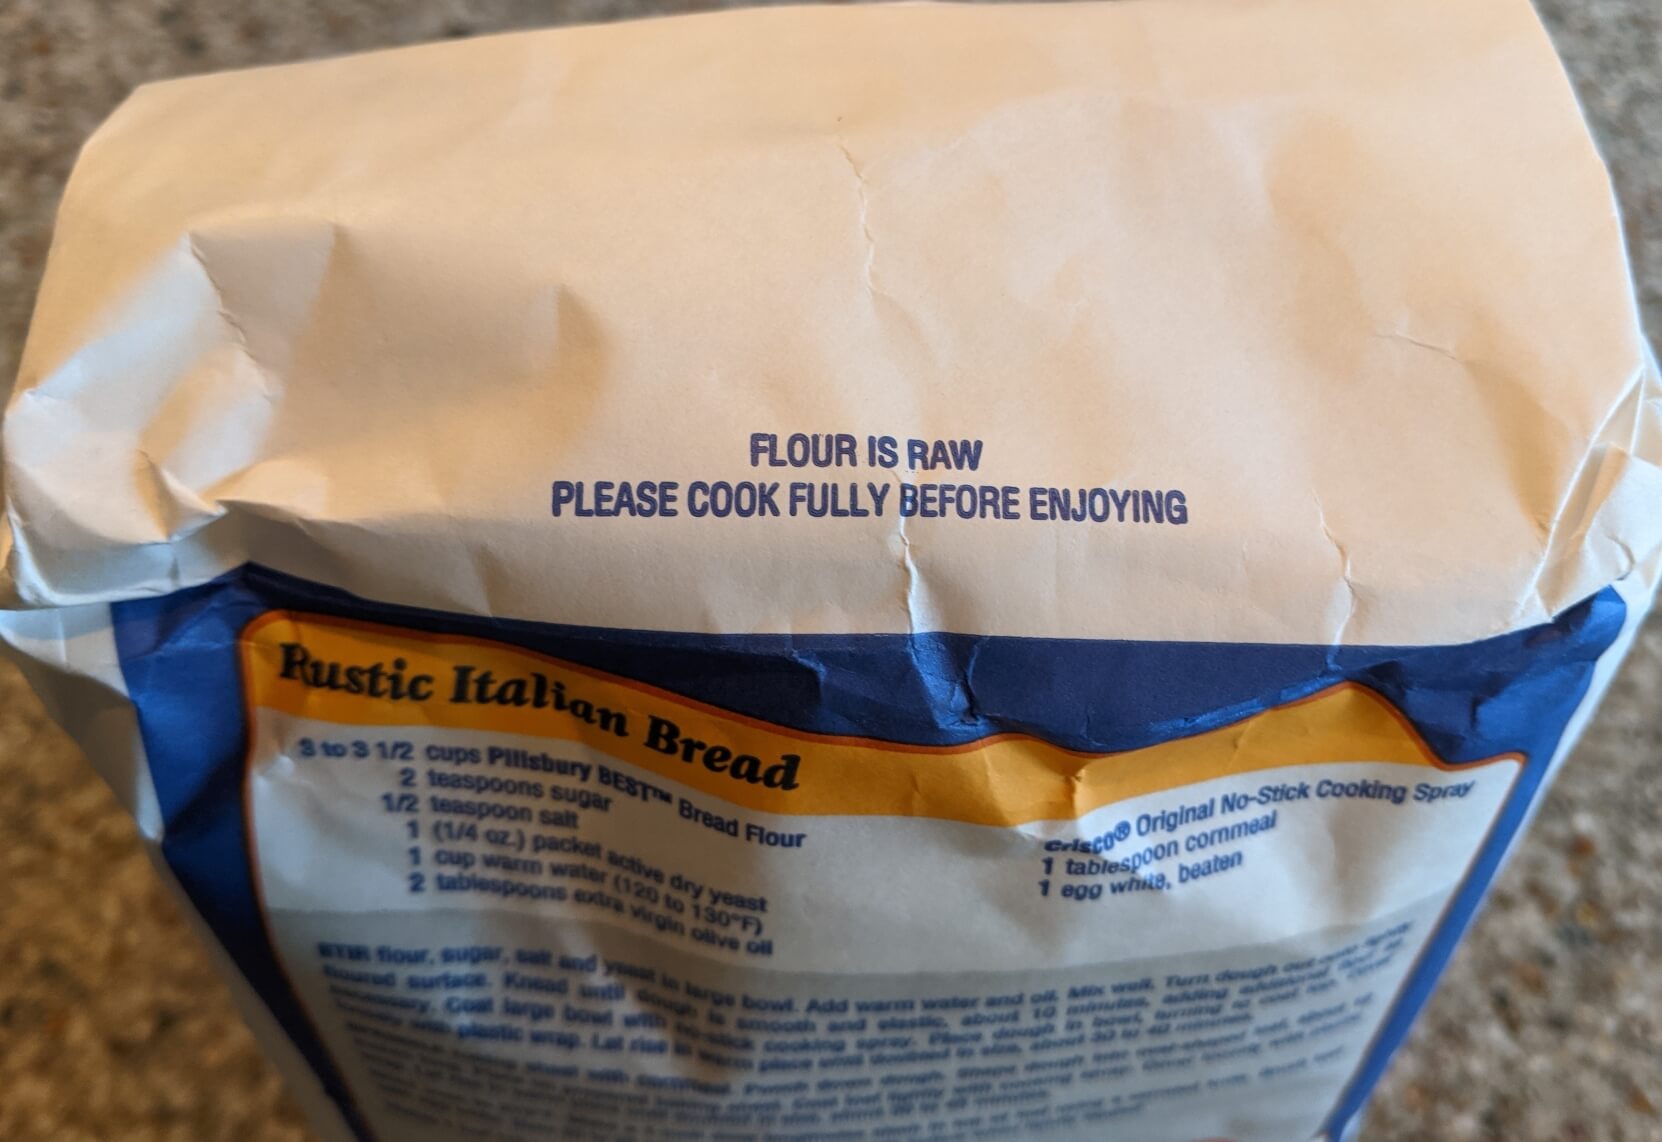 bag of flour warning label